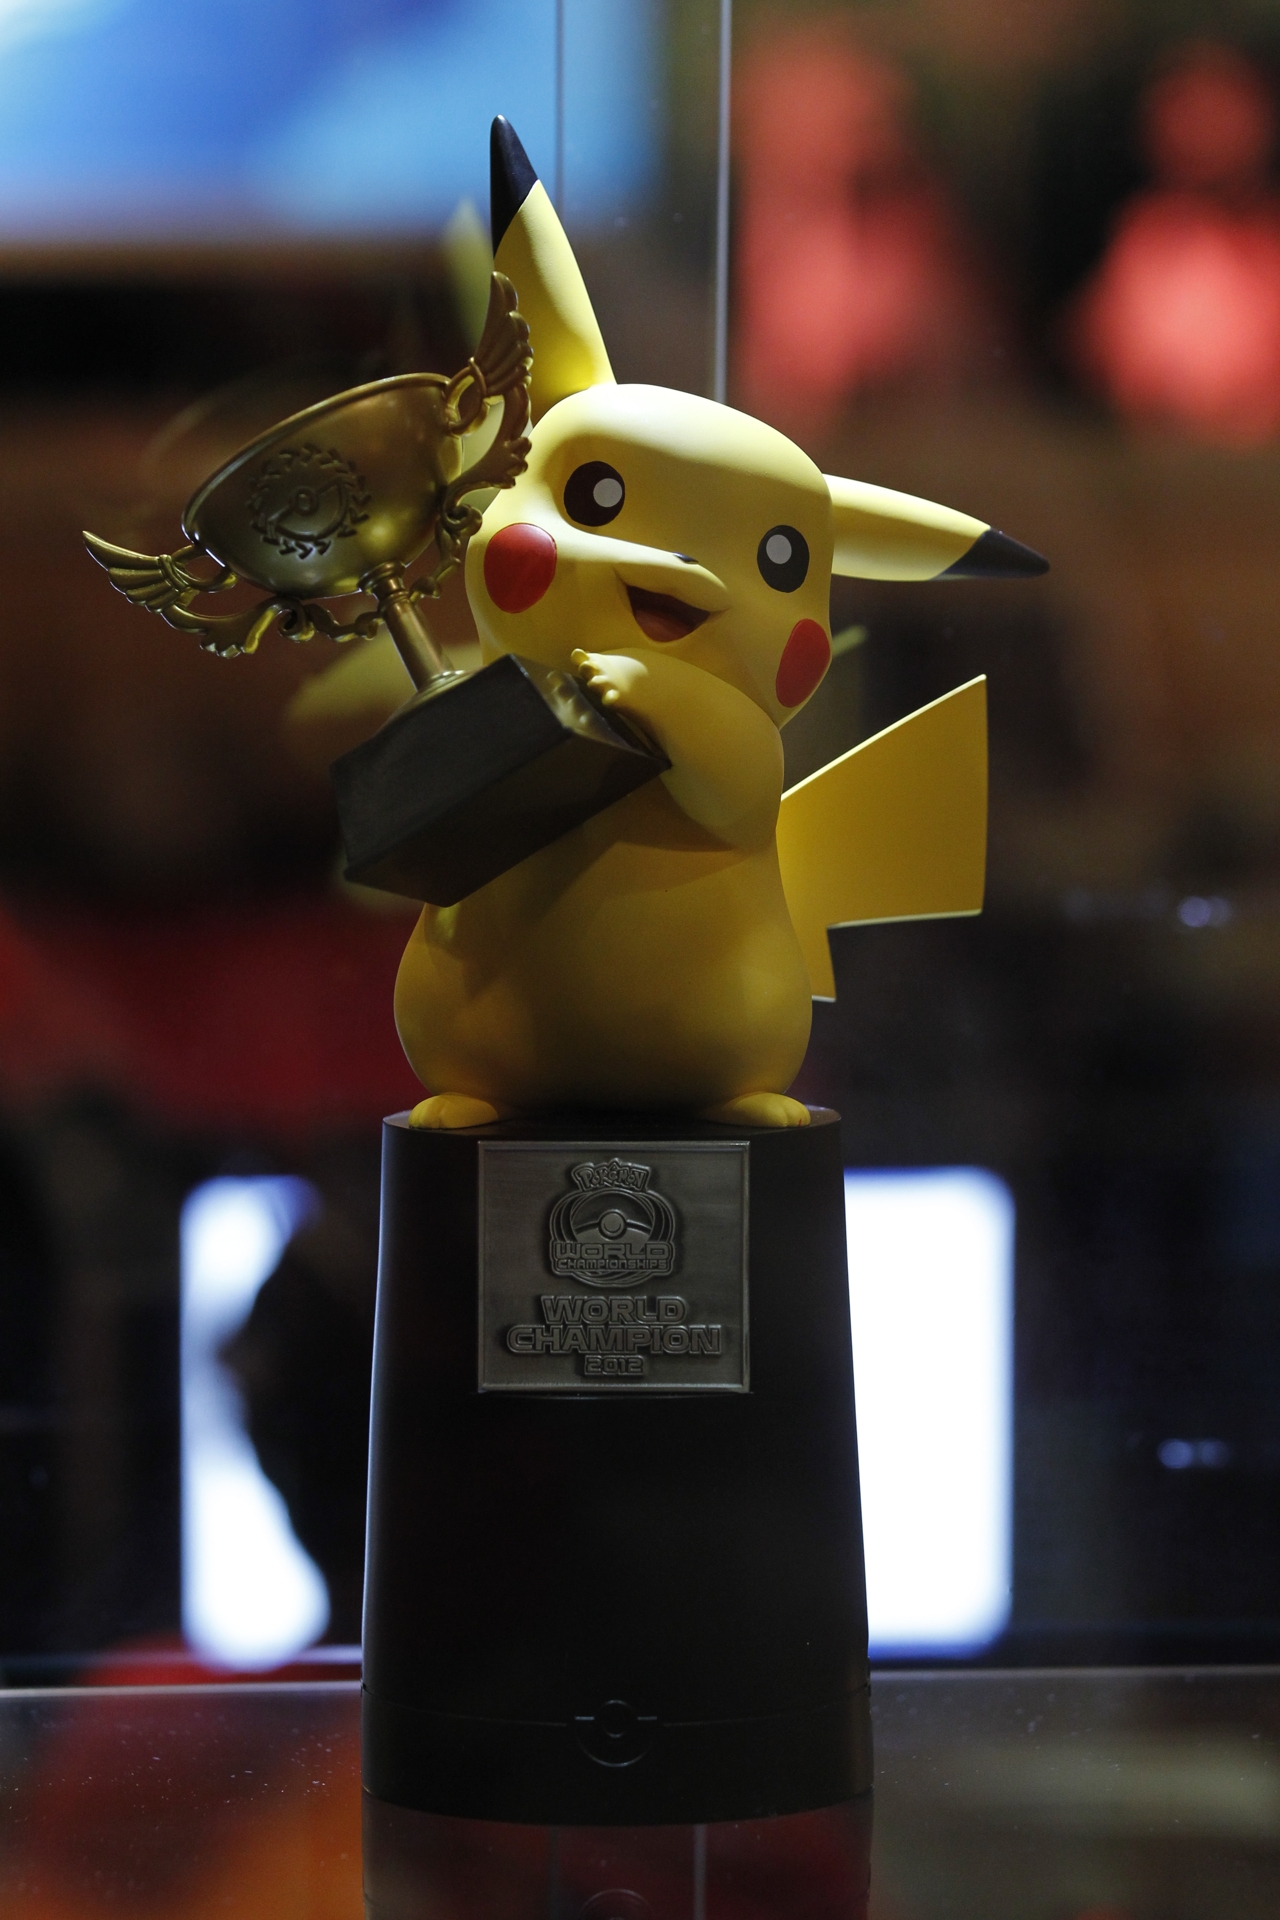 Die Sieger der Pokémon Weltmeisterschaft 2012 stehen fest